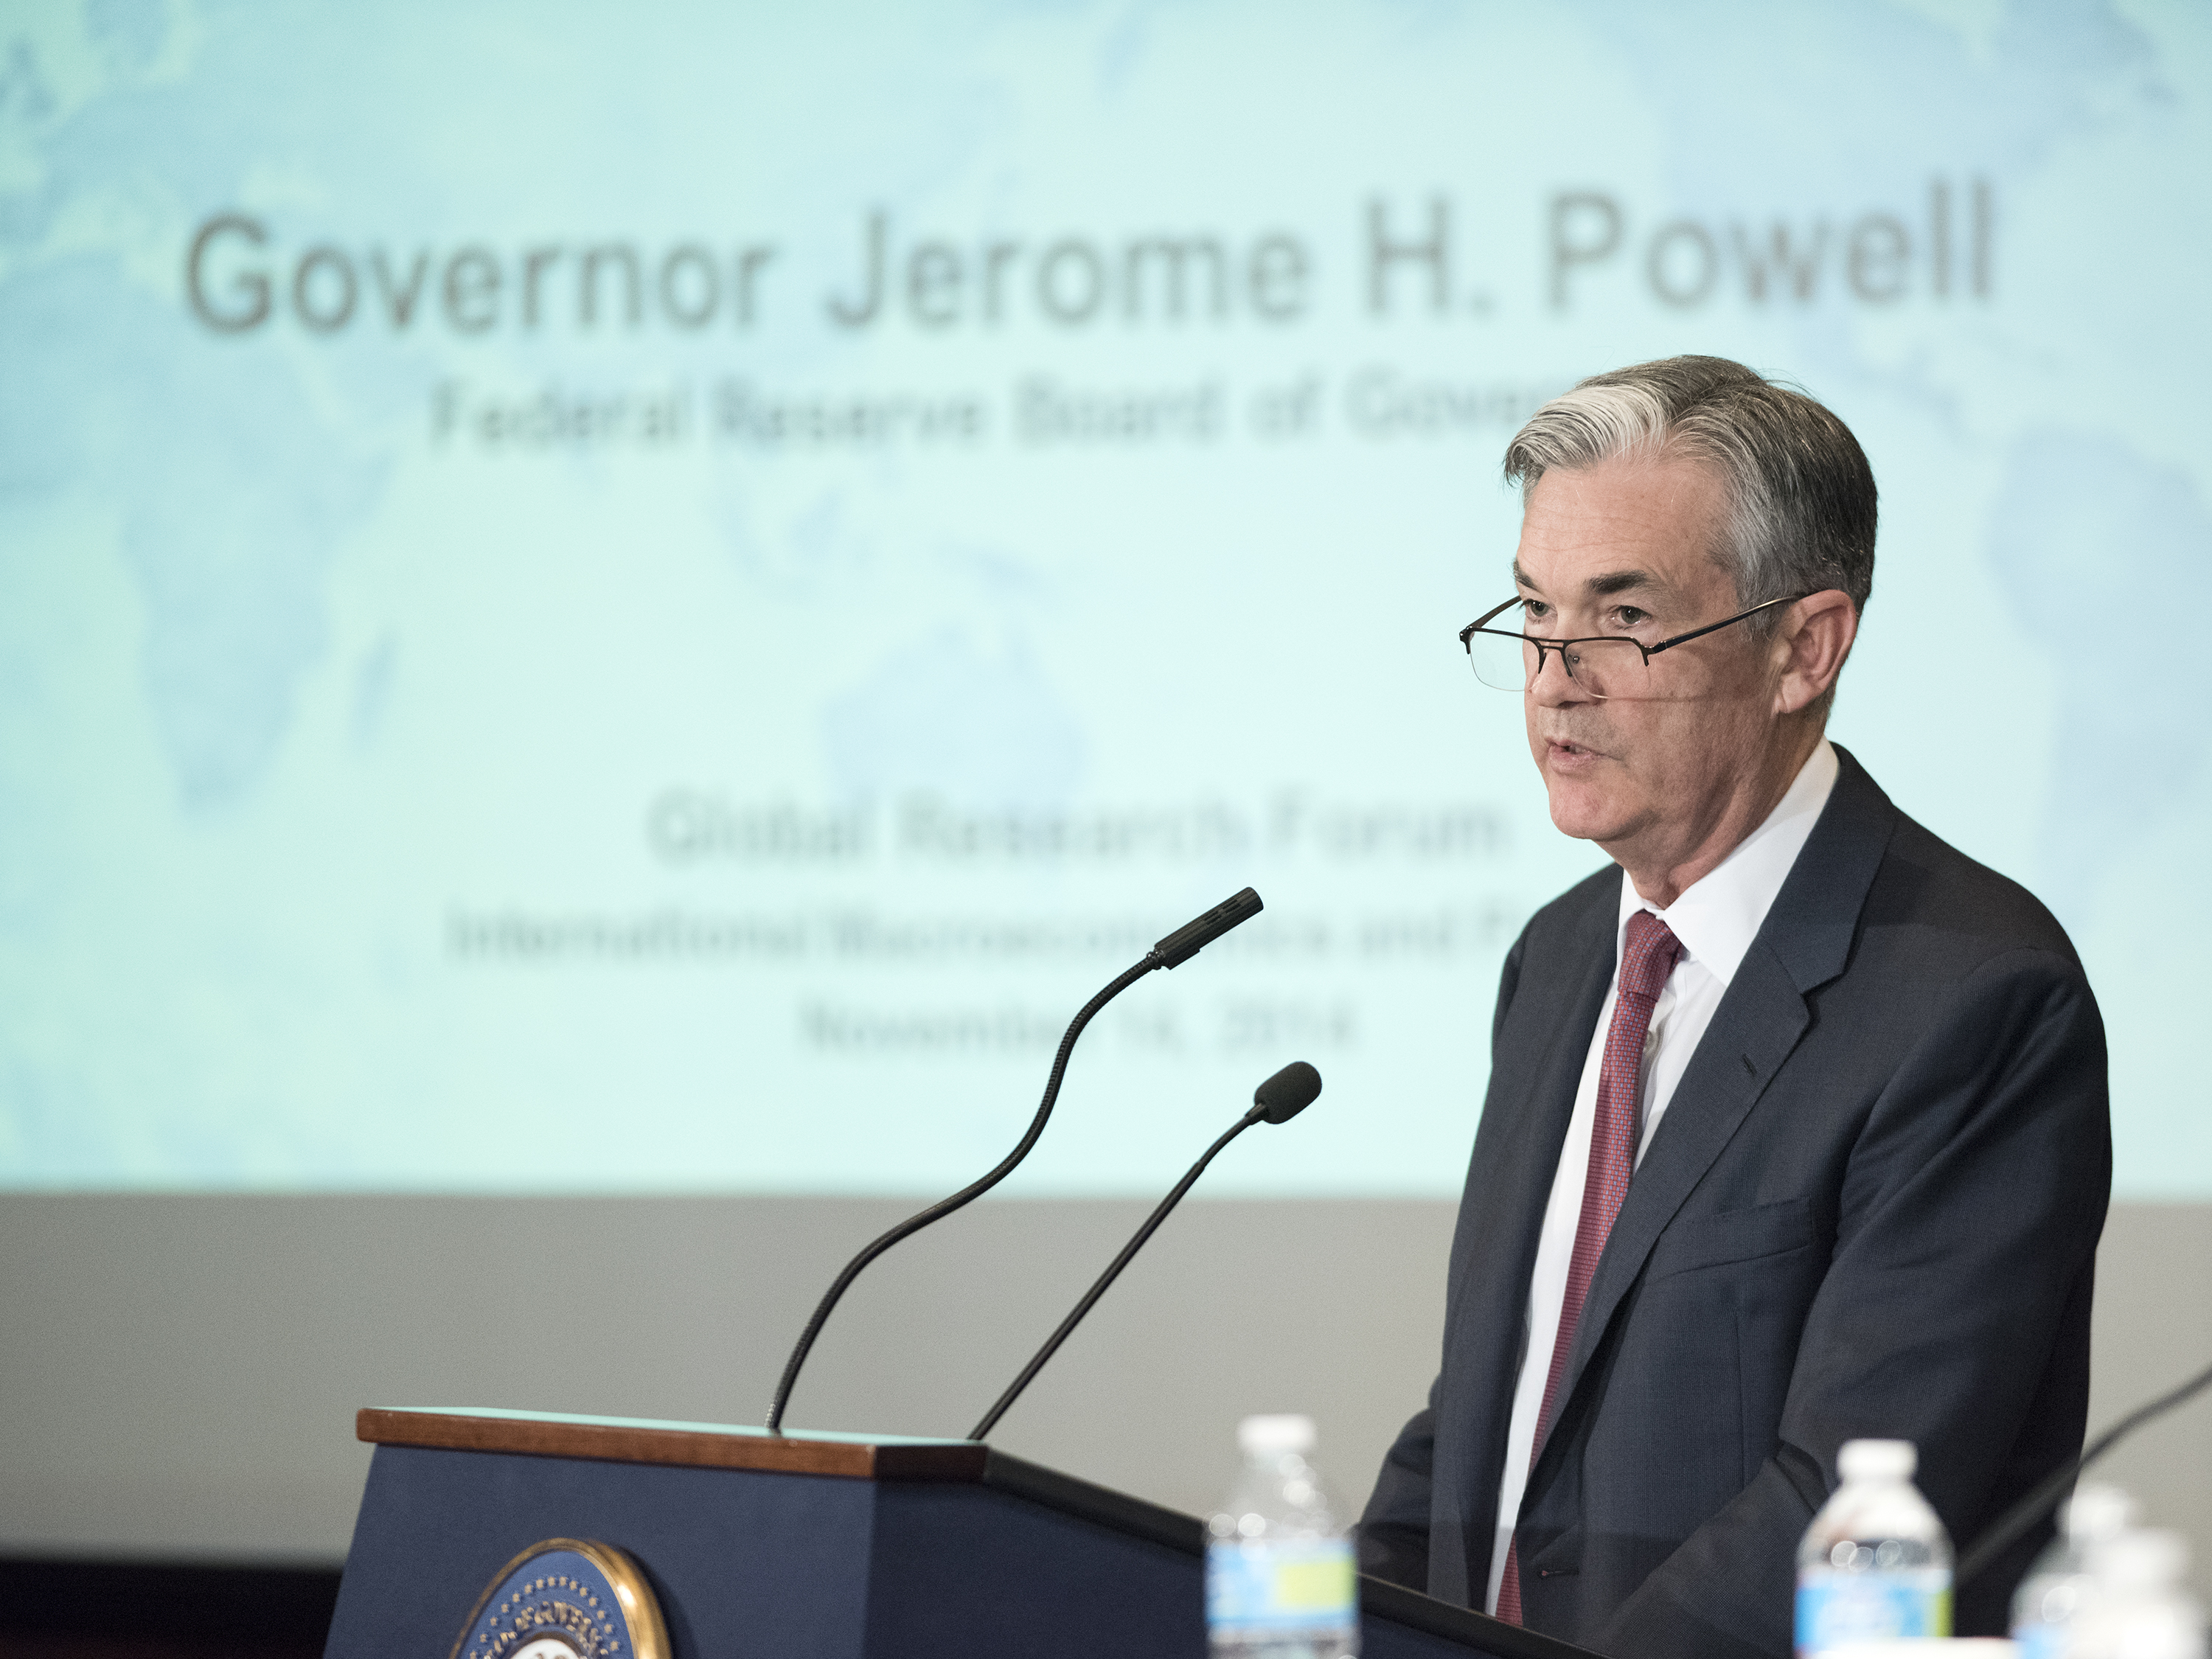 Une photographie montre le président de la Fed Jay Powell s'exprimant à une tribune.